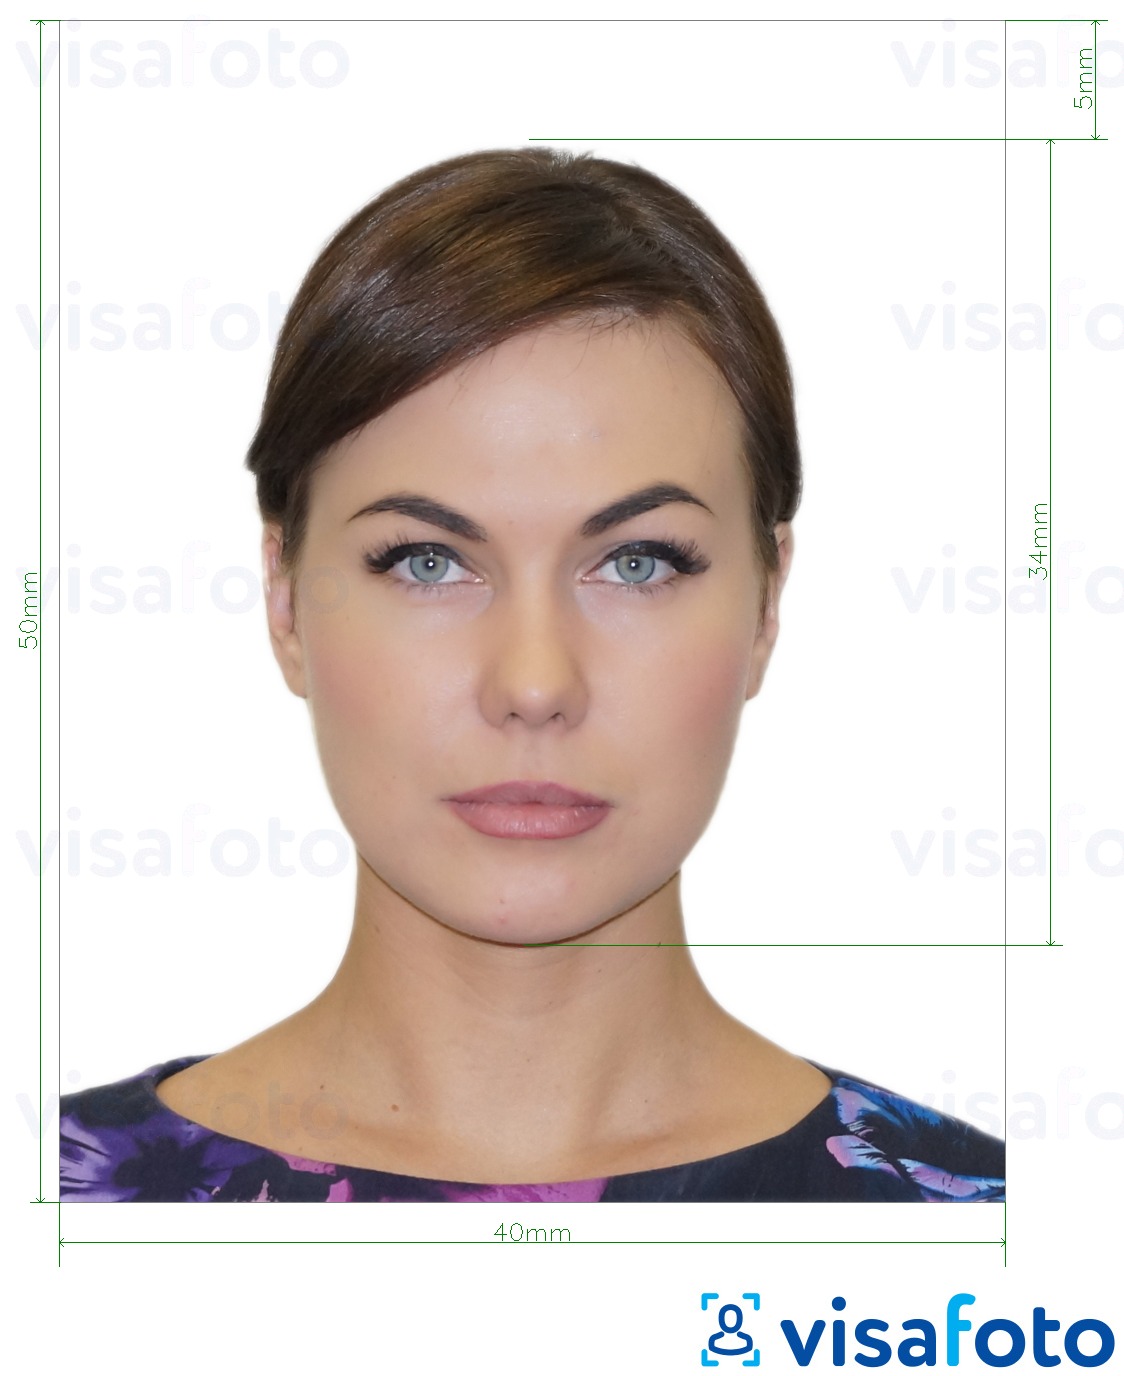 Exemple de foto per a Albània visa electrònica 4x5 cm amb la mida exacta especificada